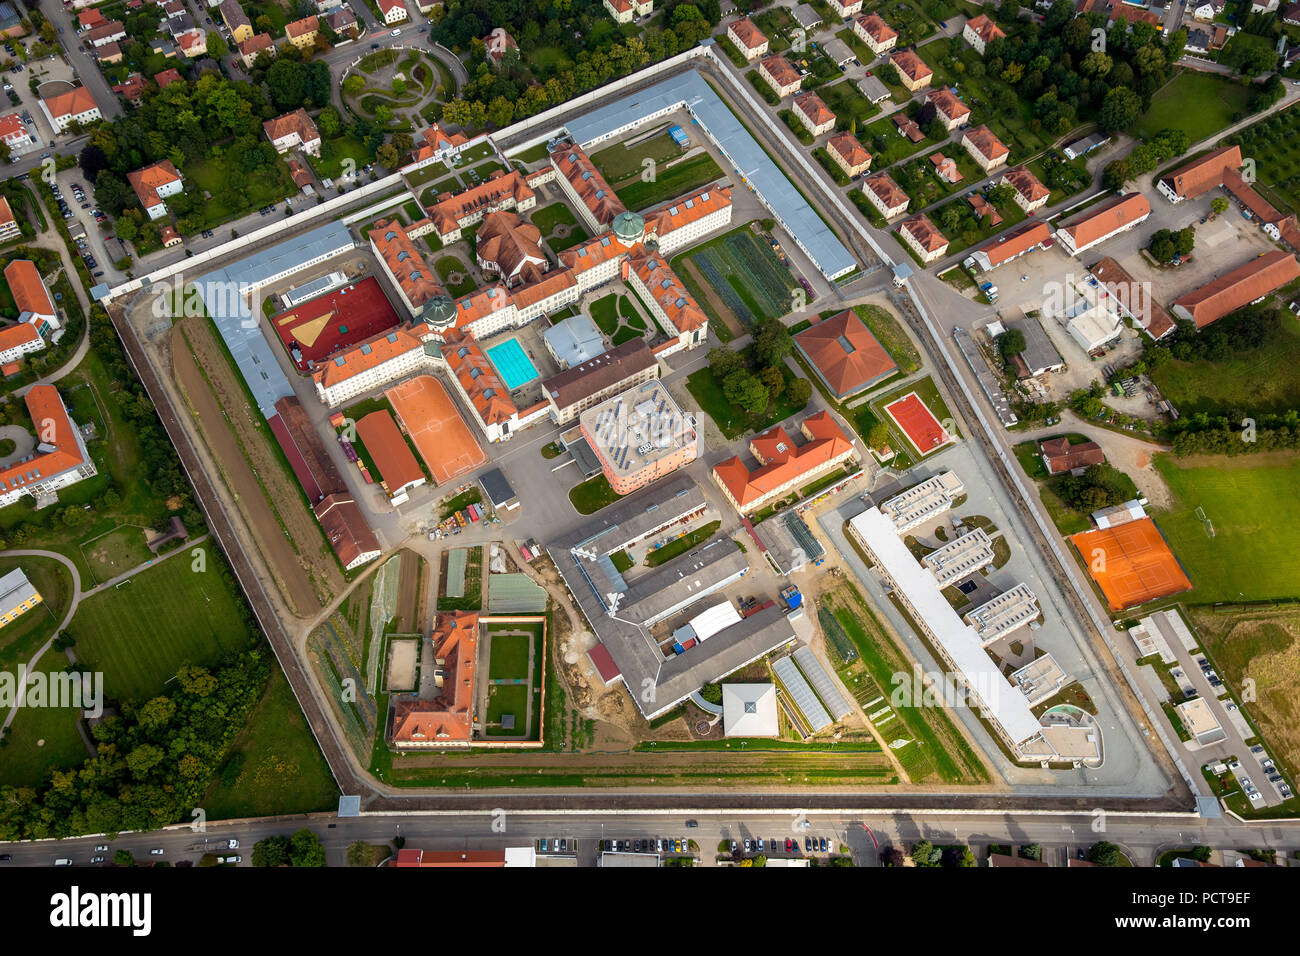 JVA Straubing prigione, attuazione di una punizione (Strafvollzug) in Baviera, Straubing prigione con cortile e piscina, Straubing, Baviera orientale, Baviera, Germania, Europa Foto Stock